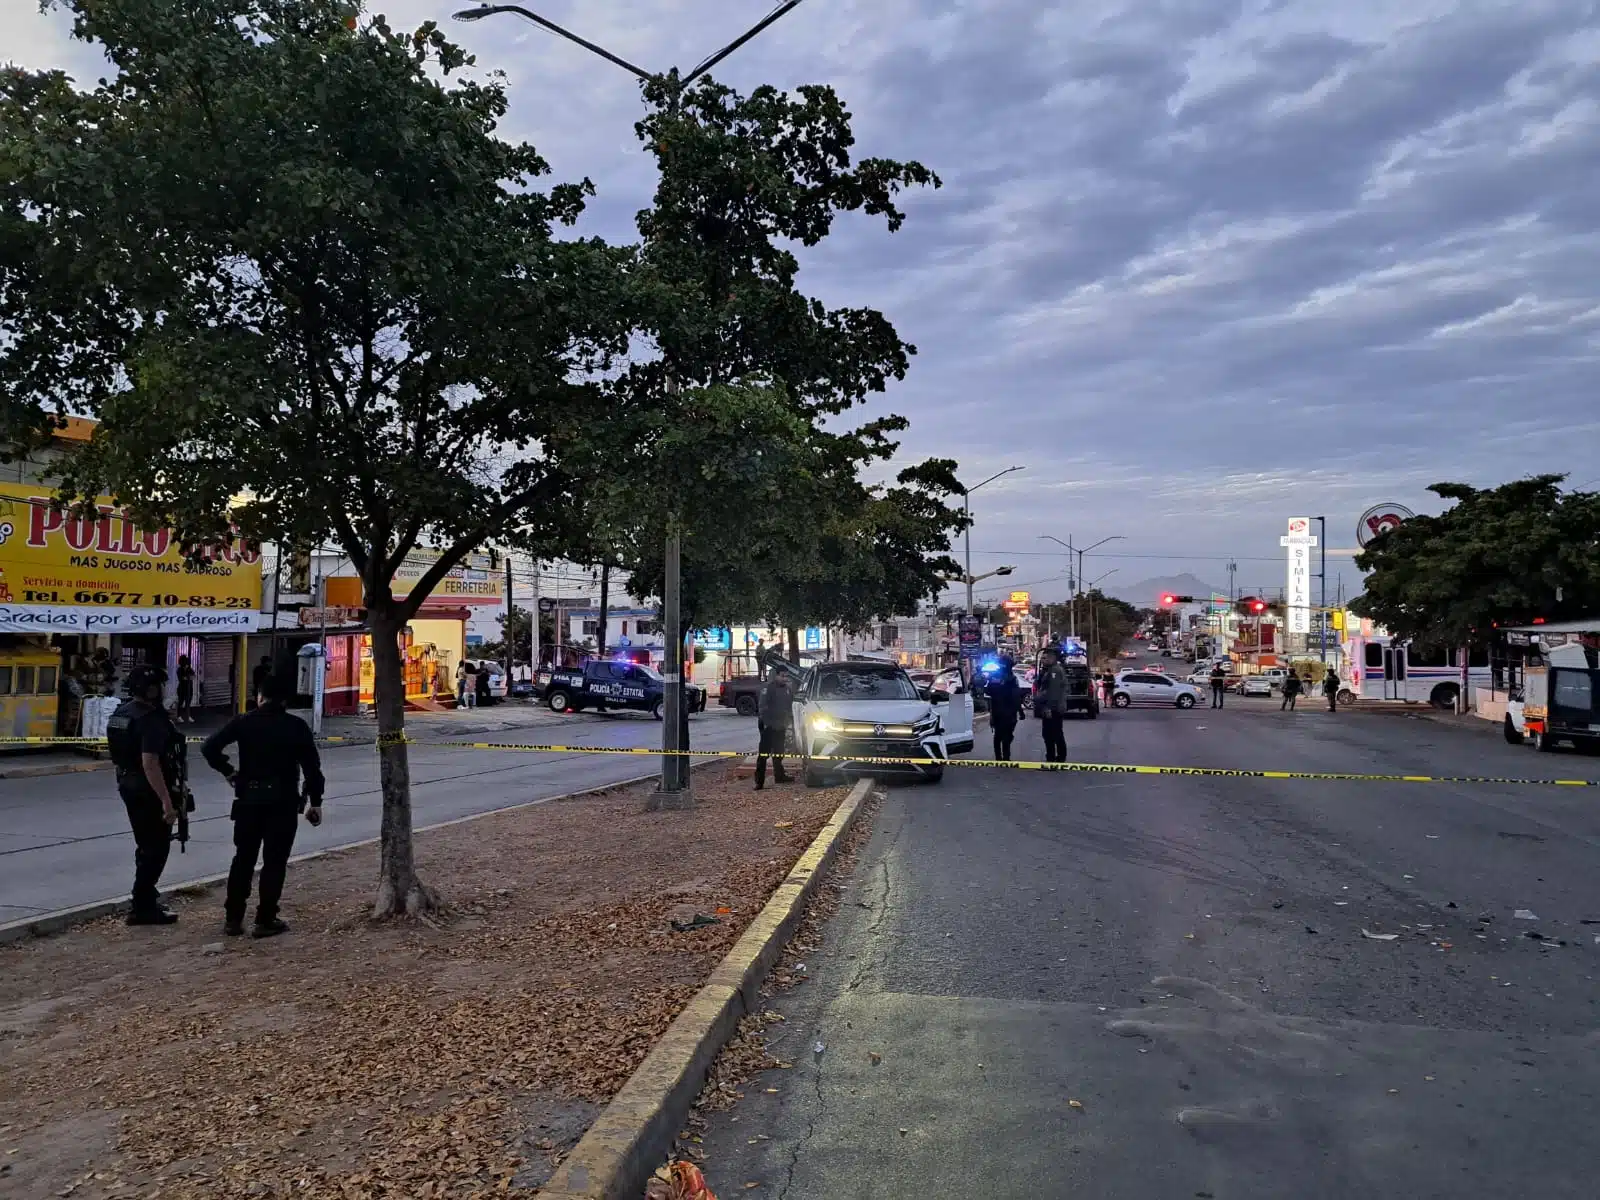 Camioneta en la que hirieron de bala a un hombre en Culiacán